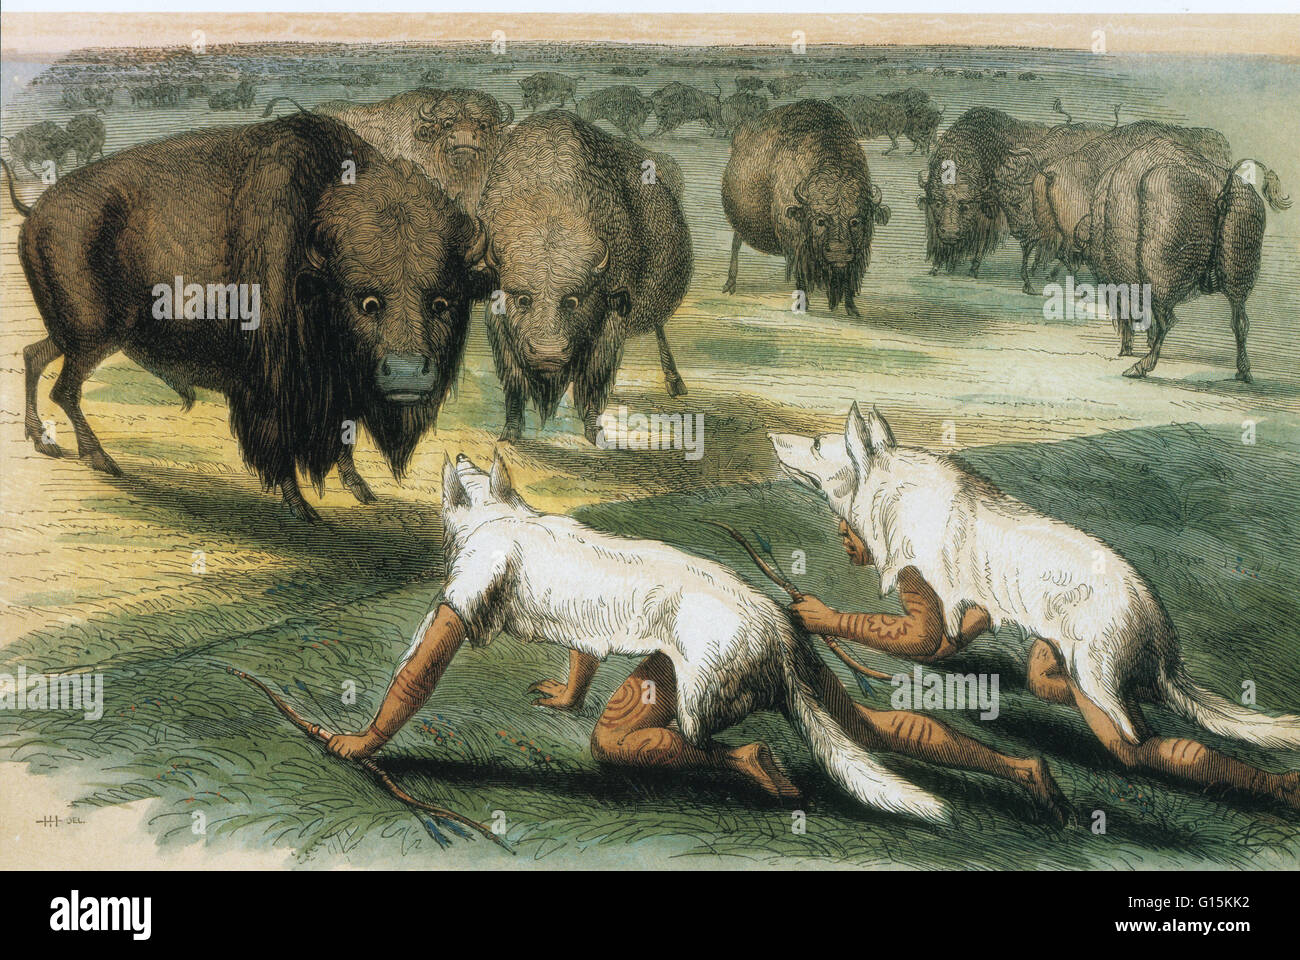 Pittura di olio dal titolo: Caccia Buffalo camuffati con pelli di lupo, 1832, da George Catlin. George Catlin (1796-1872) era un pittore americano, autore e chi specializzata in ritratti dei nativi americani nel Vecchio West. Catlin prevedeva una tragica fu Foto Stock